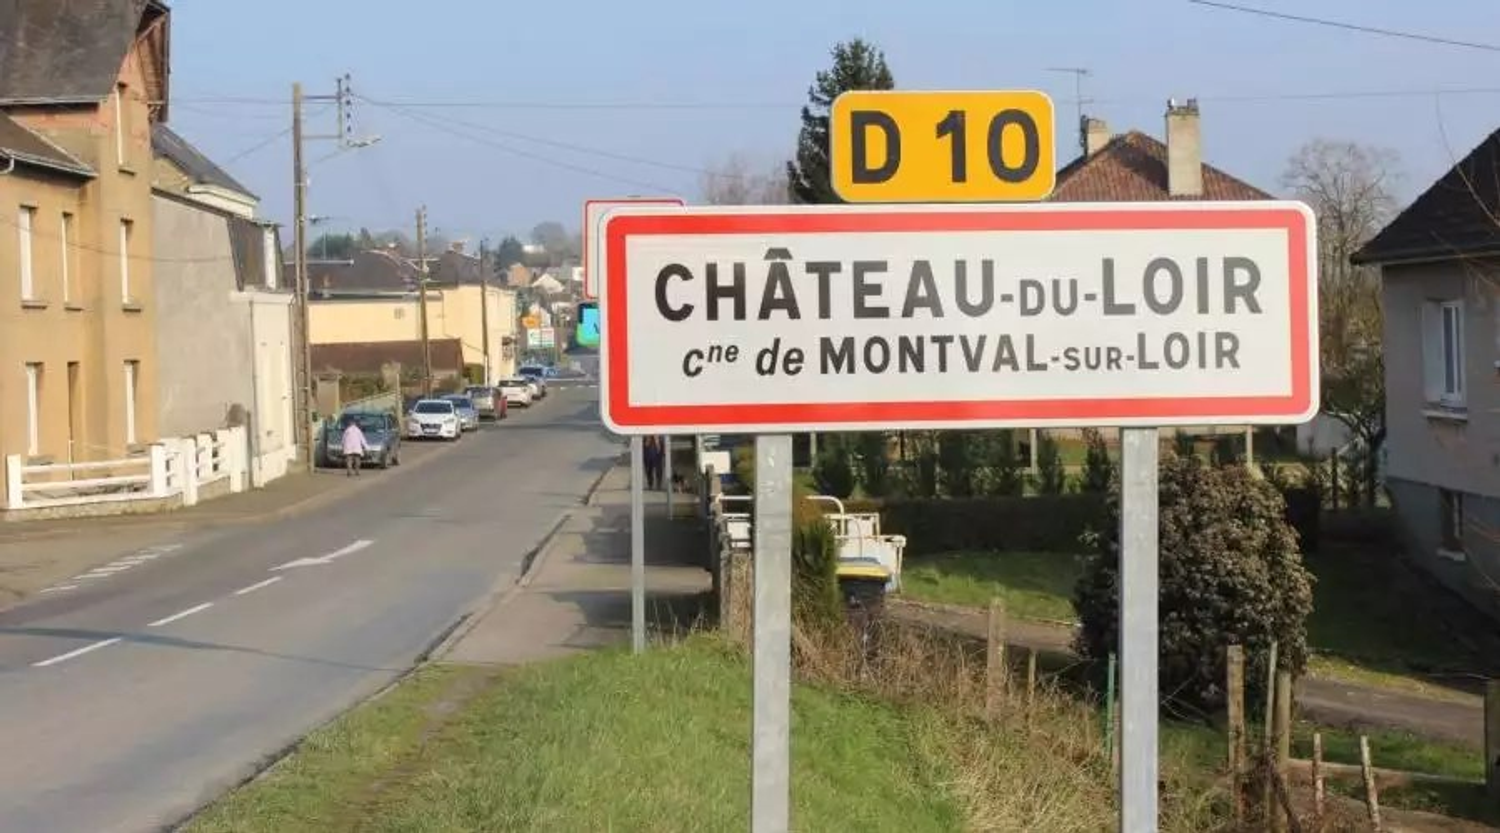 Montval-sur-Loir regroupe Château-du-Loir, Montabon et Vouvray-sur-Loir